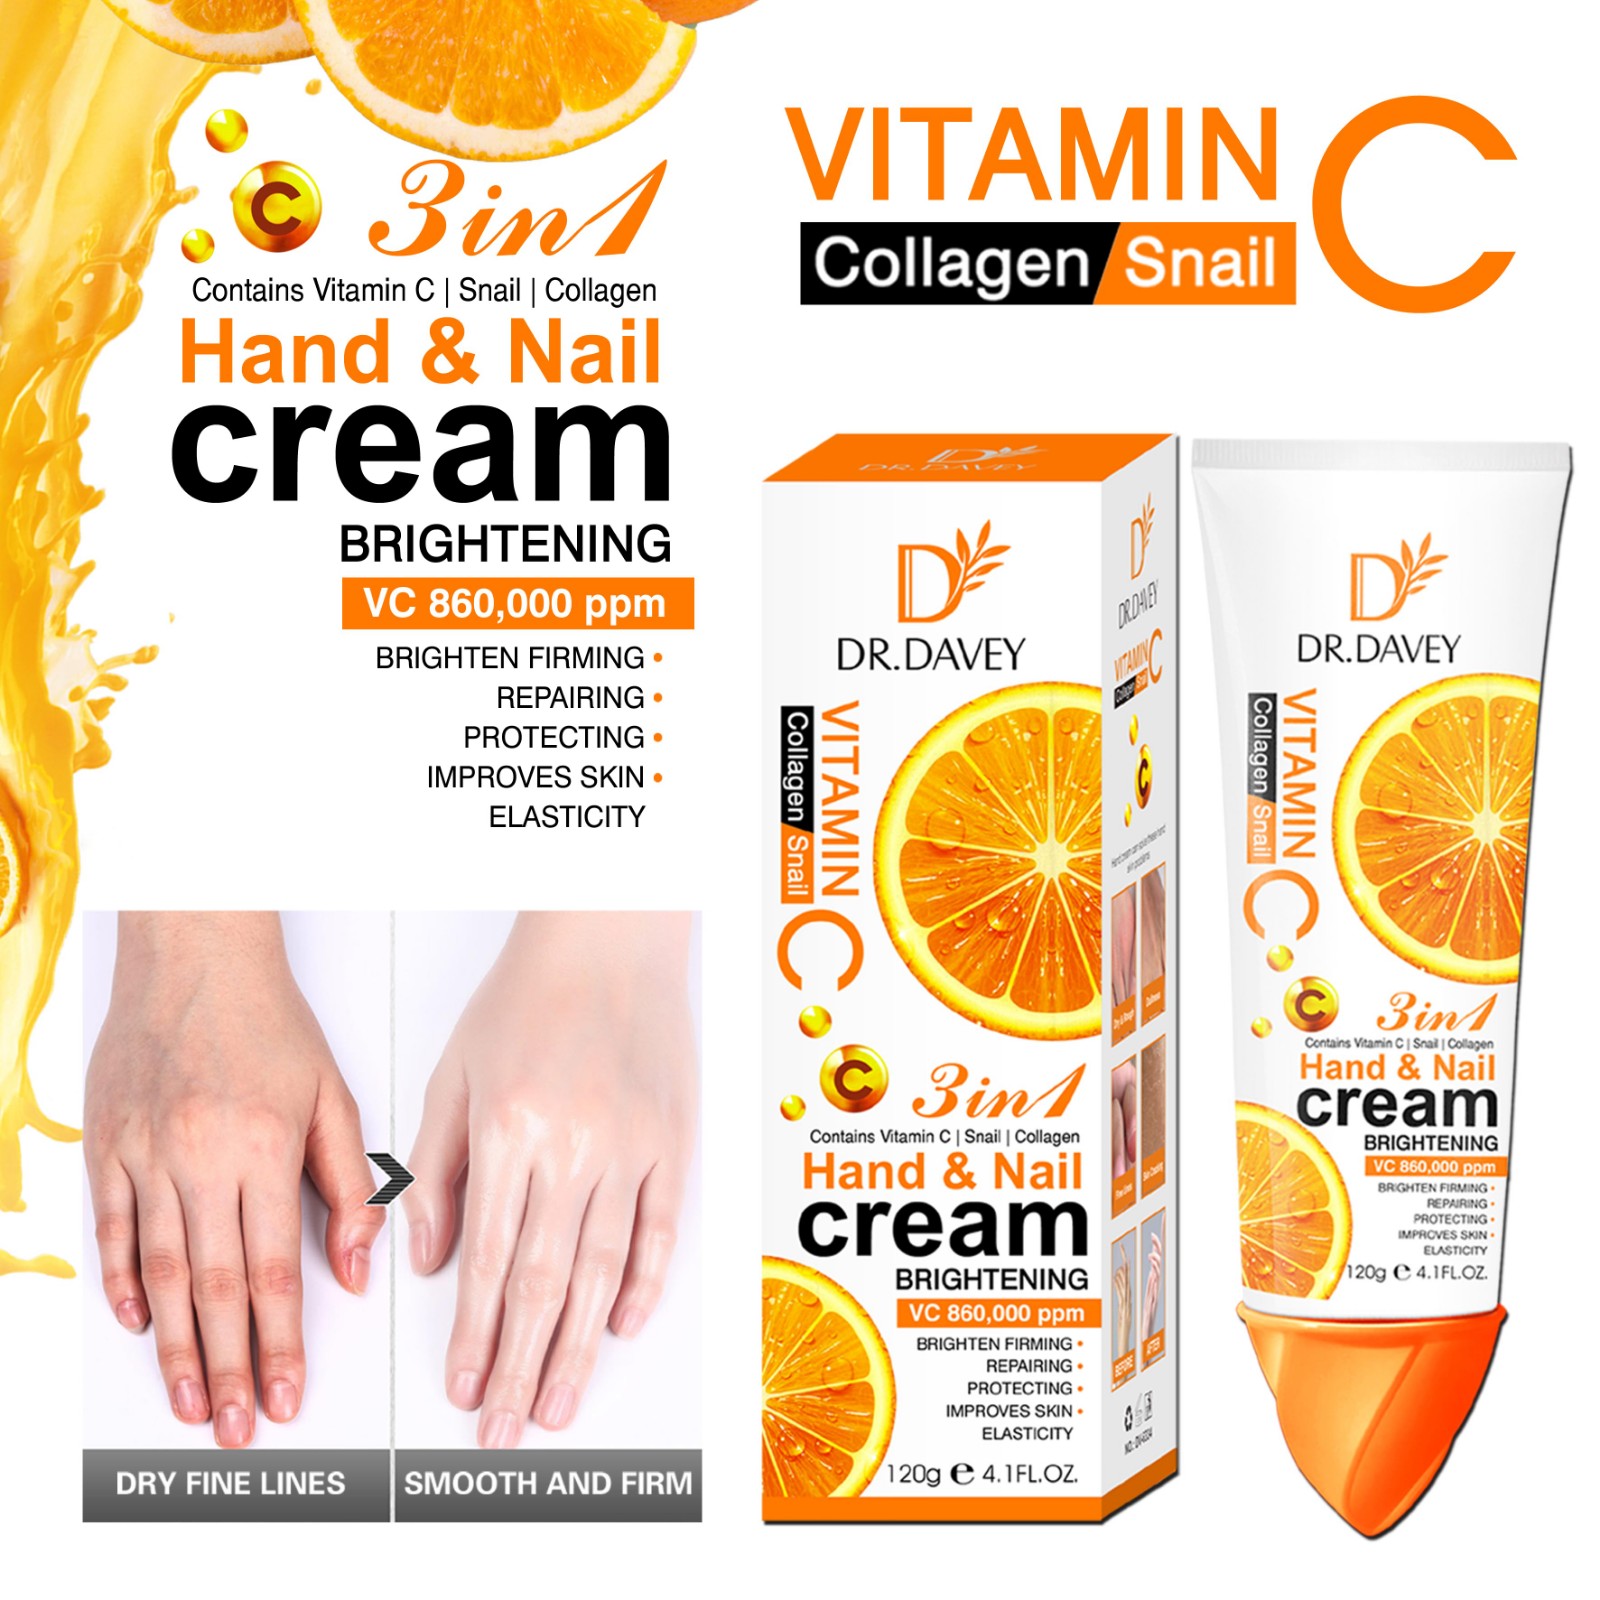  VC hand cream